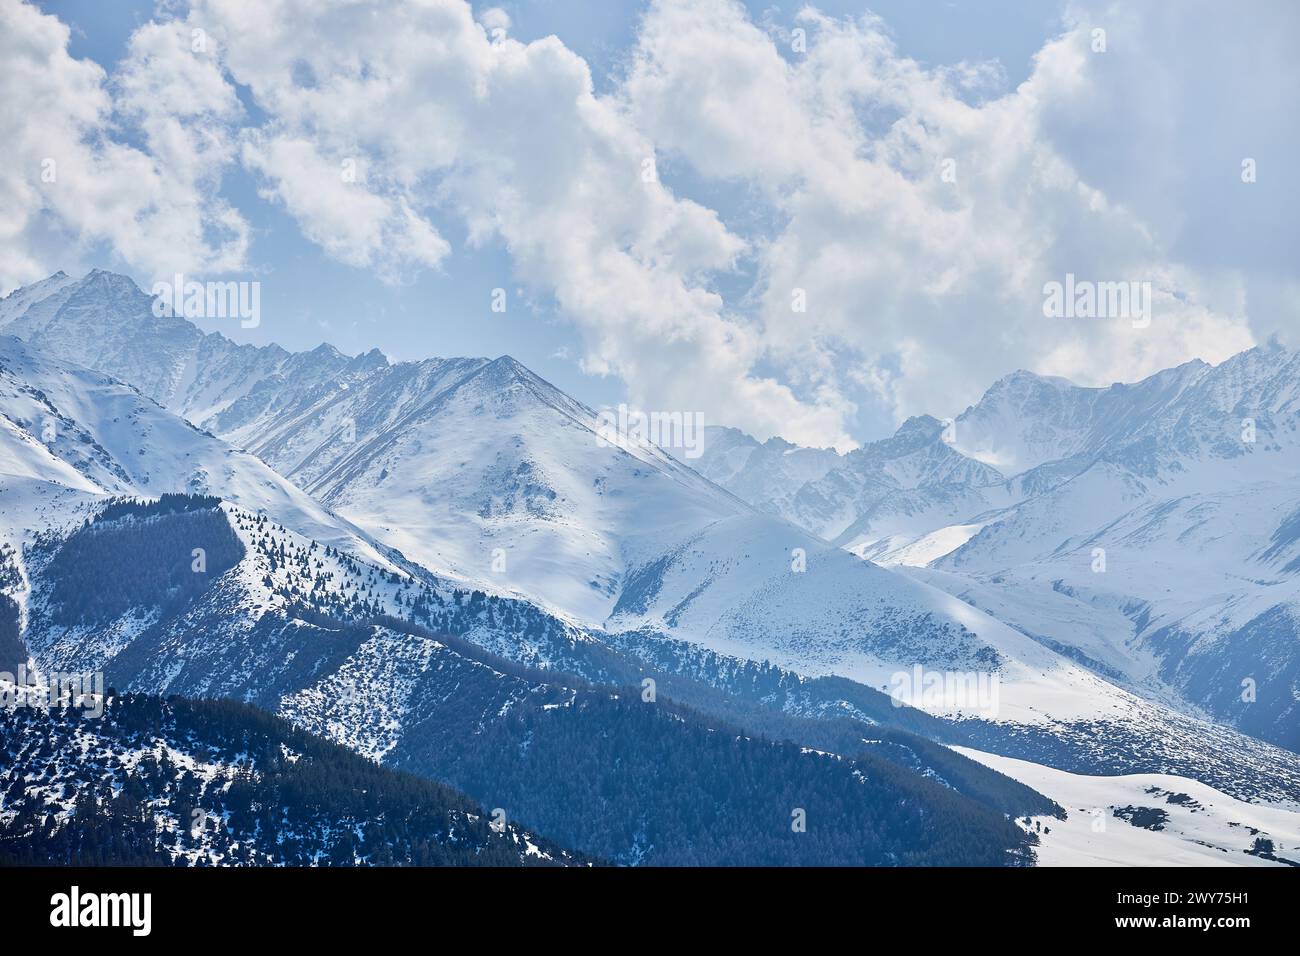 Panoramablick auf schneebedeckte hohe Berge. Chunkurchak-Tal in Kirgisistan. Natürliche Winterlandschaft, Bergtapete. Epischer blauer Himmel mit wh Stockfoto